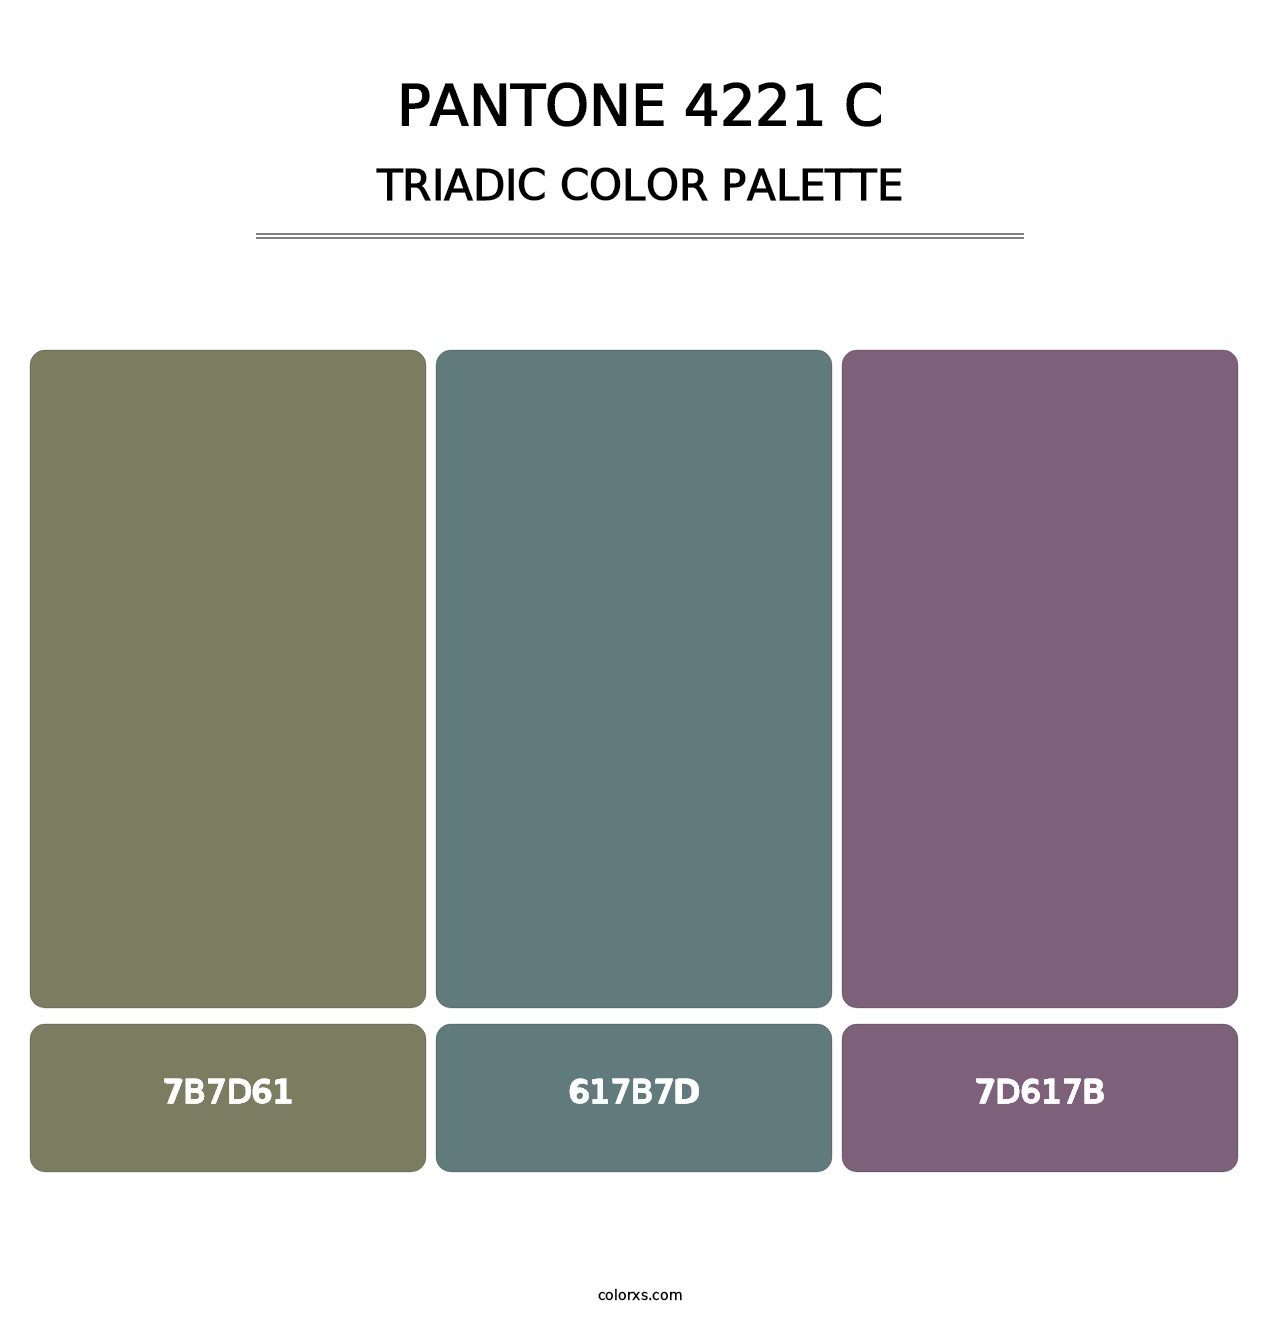 PANTONE 4221 C - Triadic Color Palette